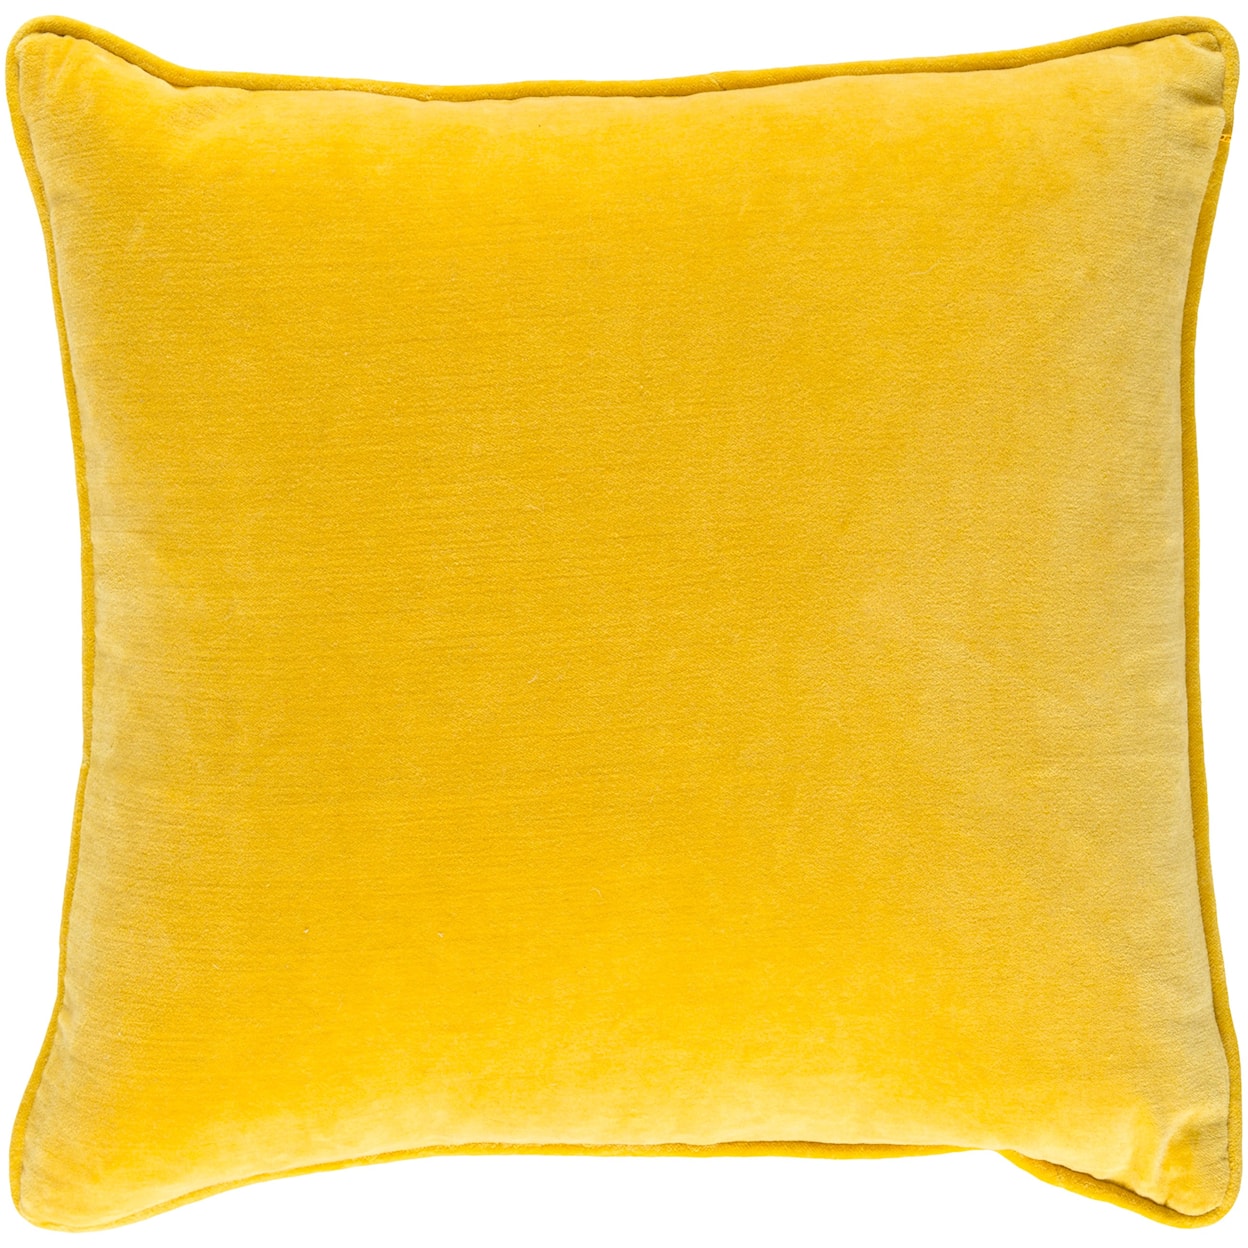 Surya Rugs Safflower Pillow Kit